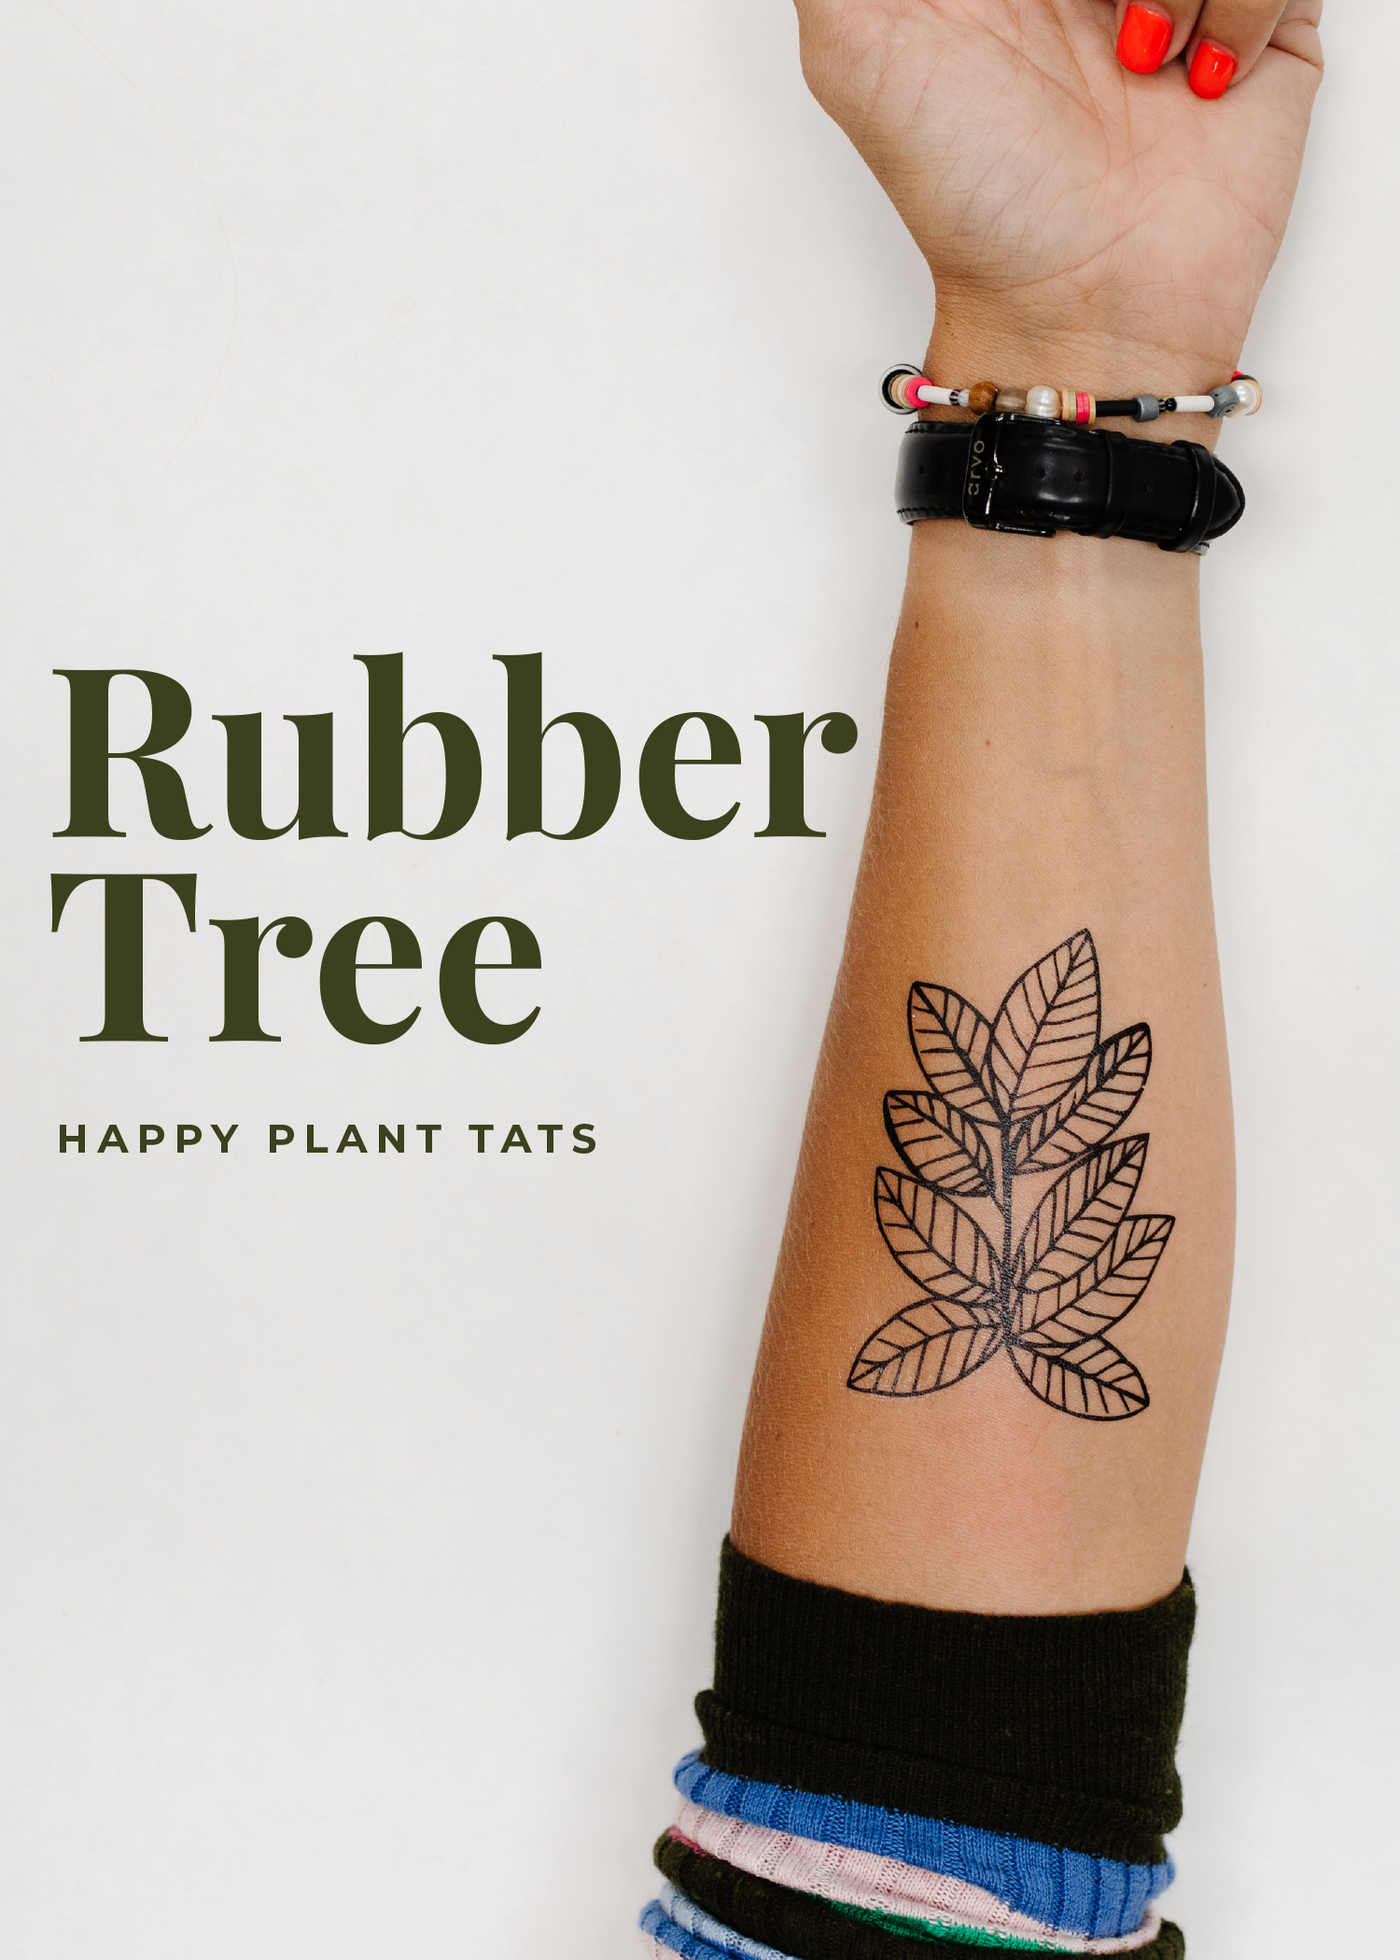 Happy Plant Tats Temporary Tattoos - Happy Happy Houseplant